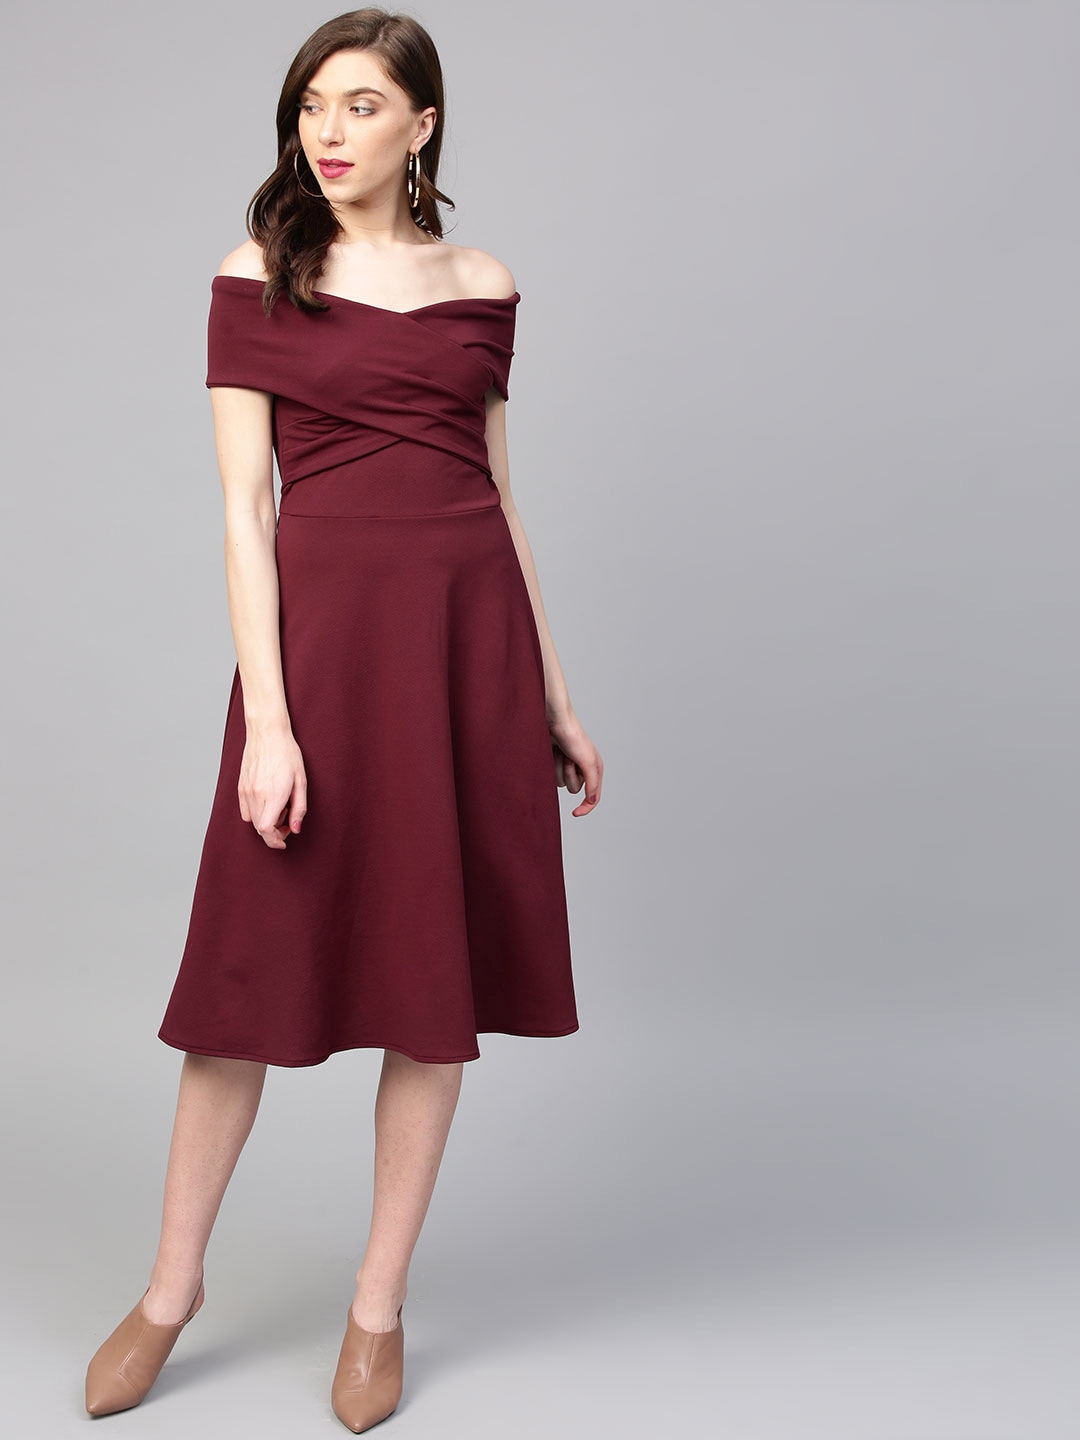 Athena Women Burgundy Solid Off-Shoulder Fit & Flare Dress